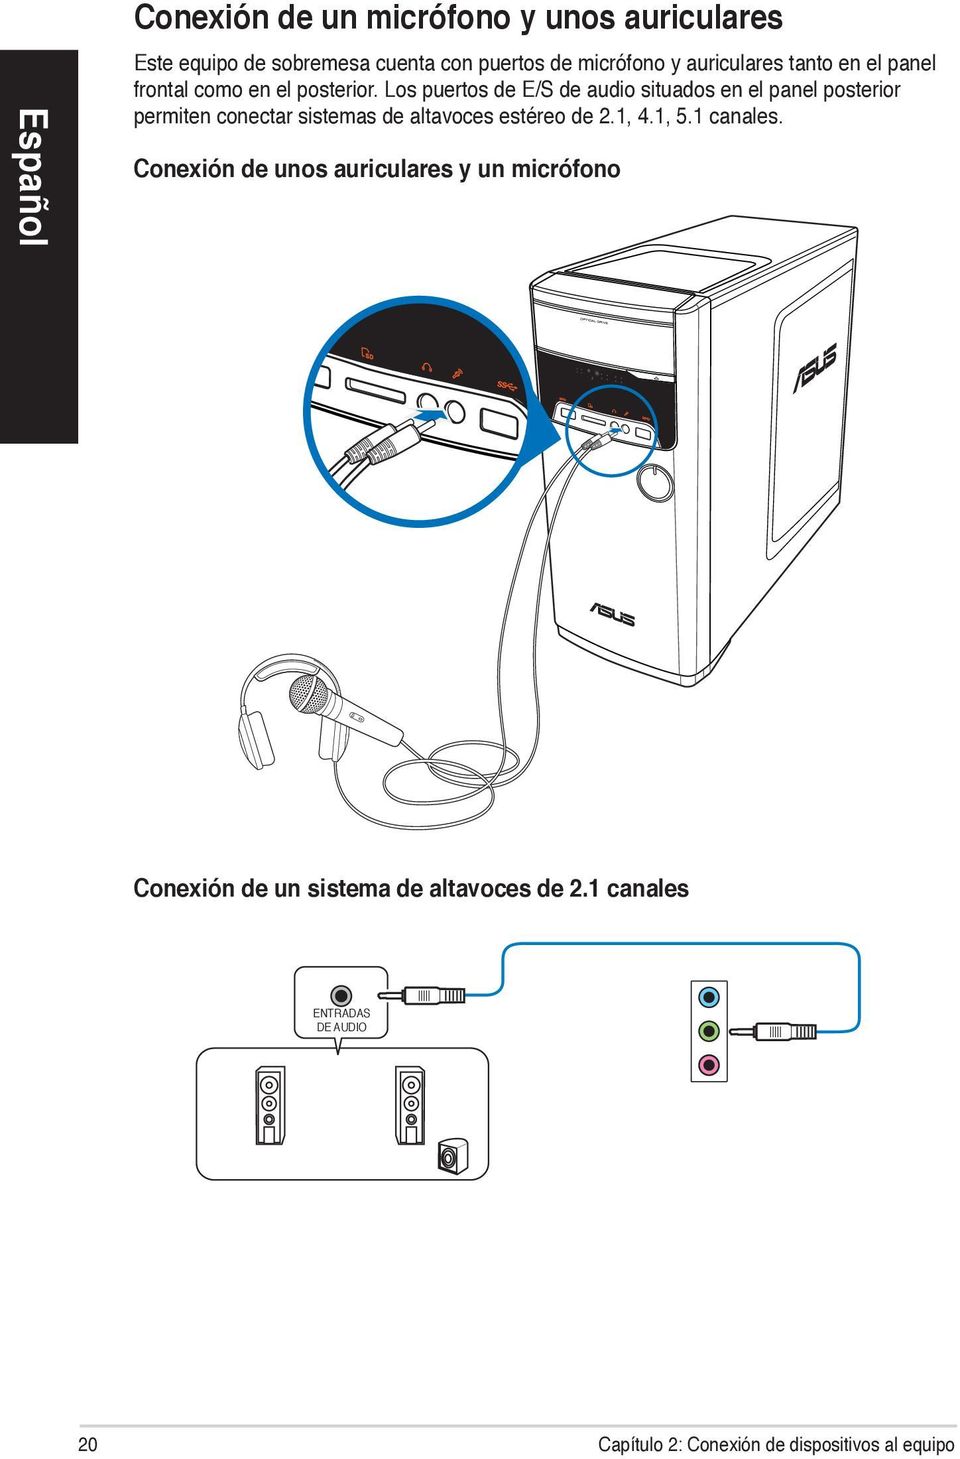 Los puertos de E/S de audio situados en el panel posterior permiten conectar sistemas de altavoces estéreo de 2.